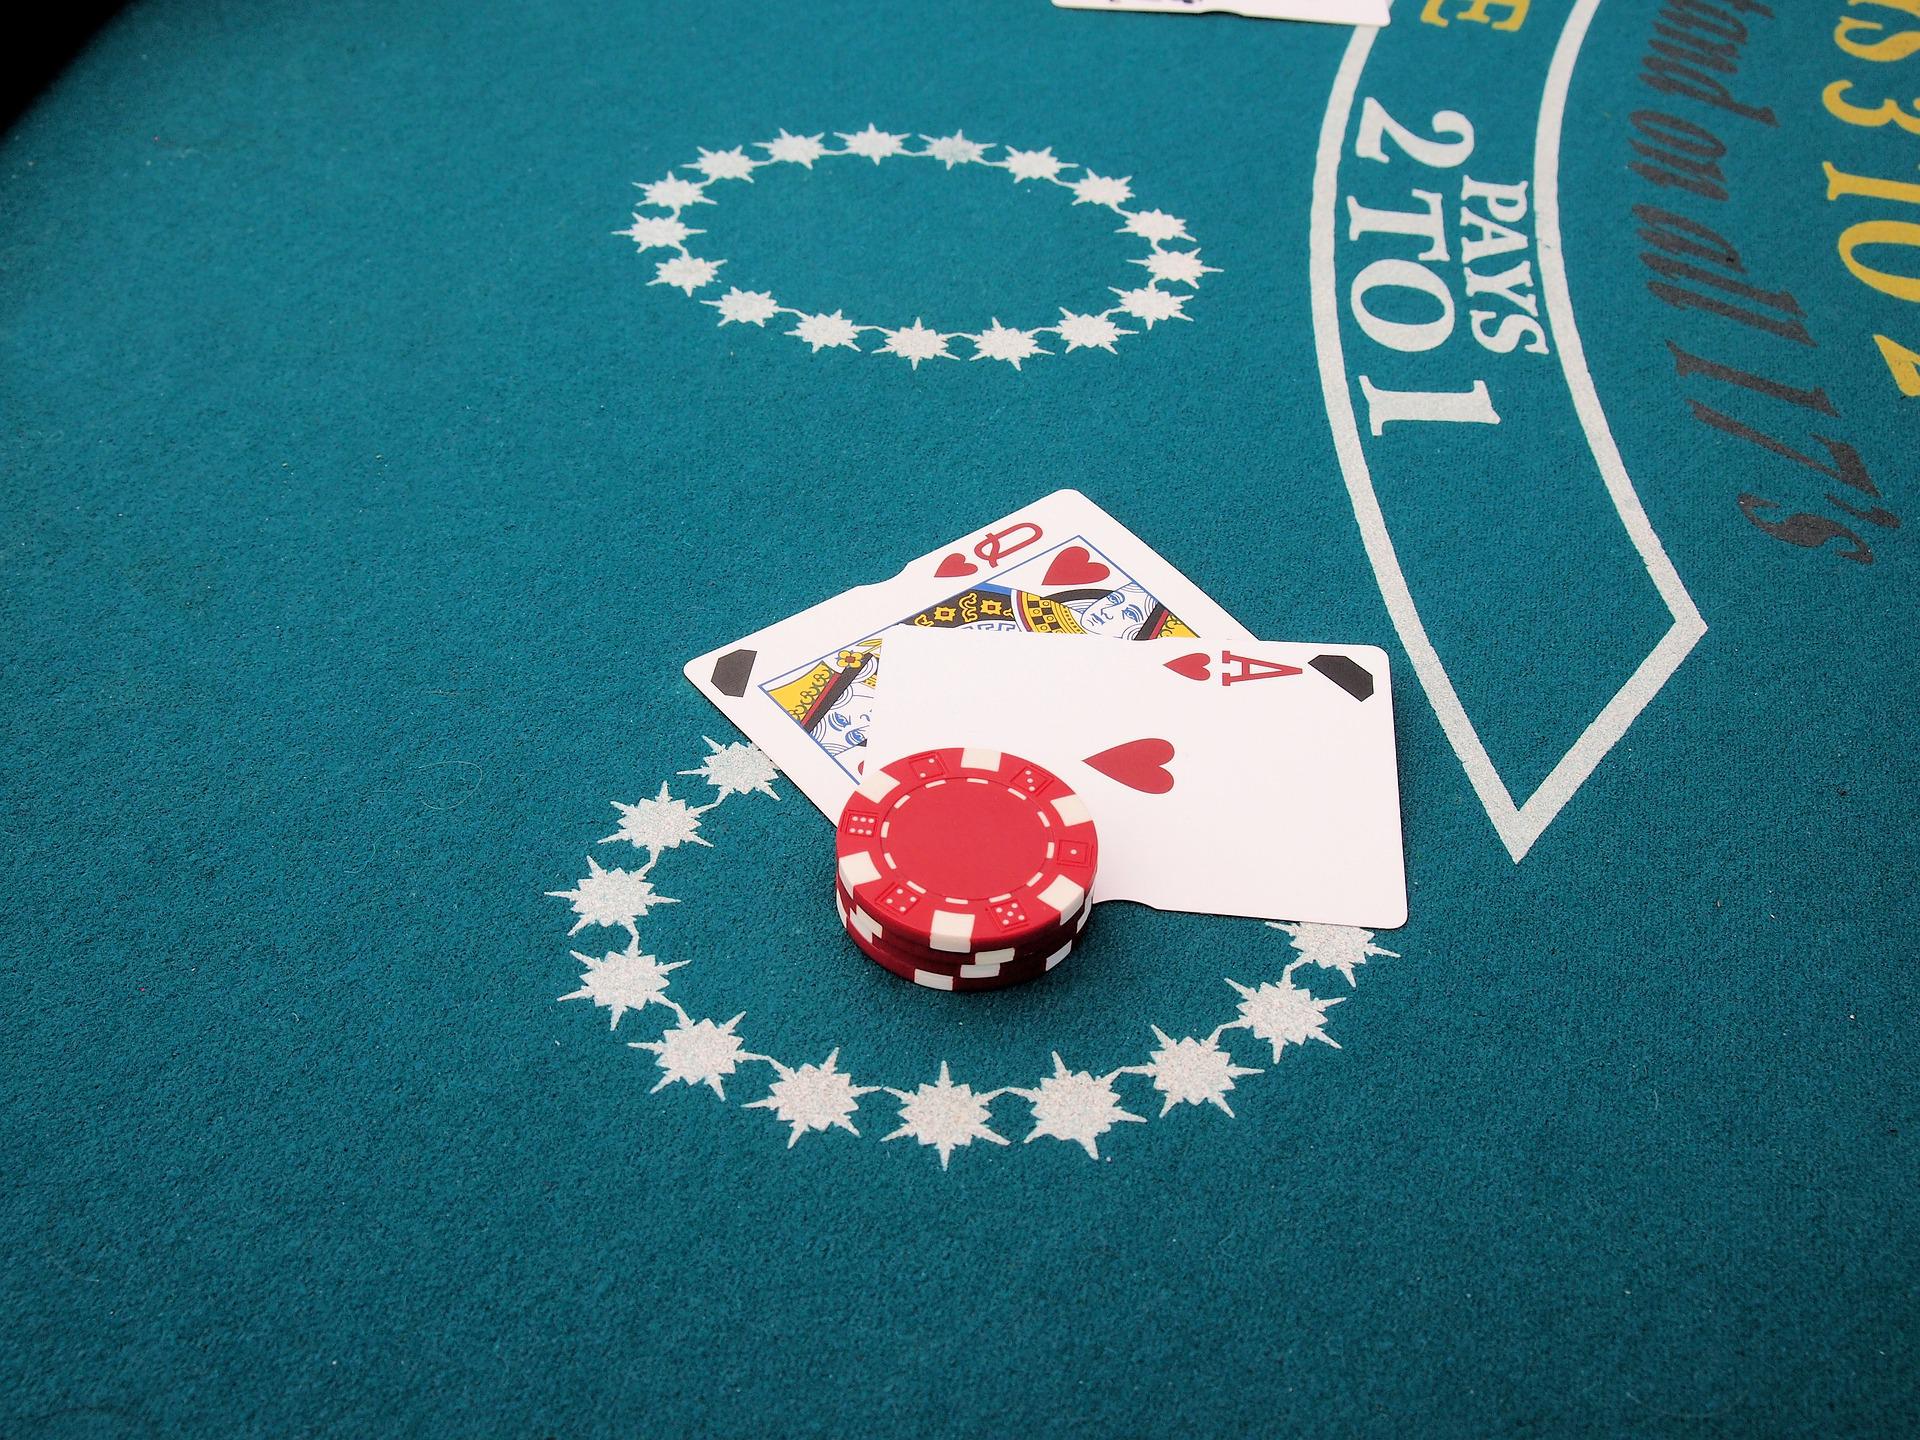 O blackjack é um dos jogos de cassino mais populares. Por conta disso, é comum que muitos mitos e verdades sejam contados sobre o blackjack.